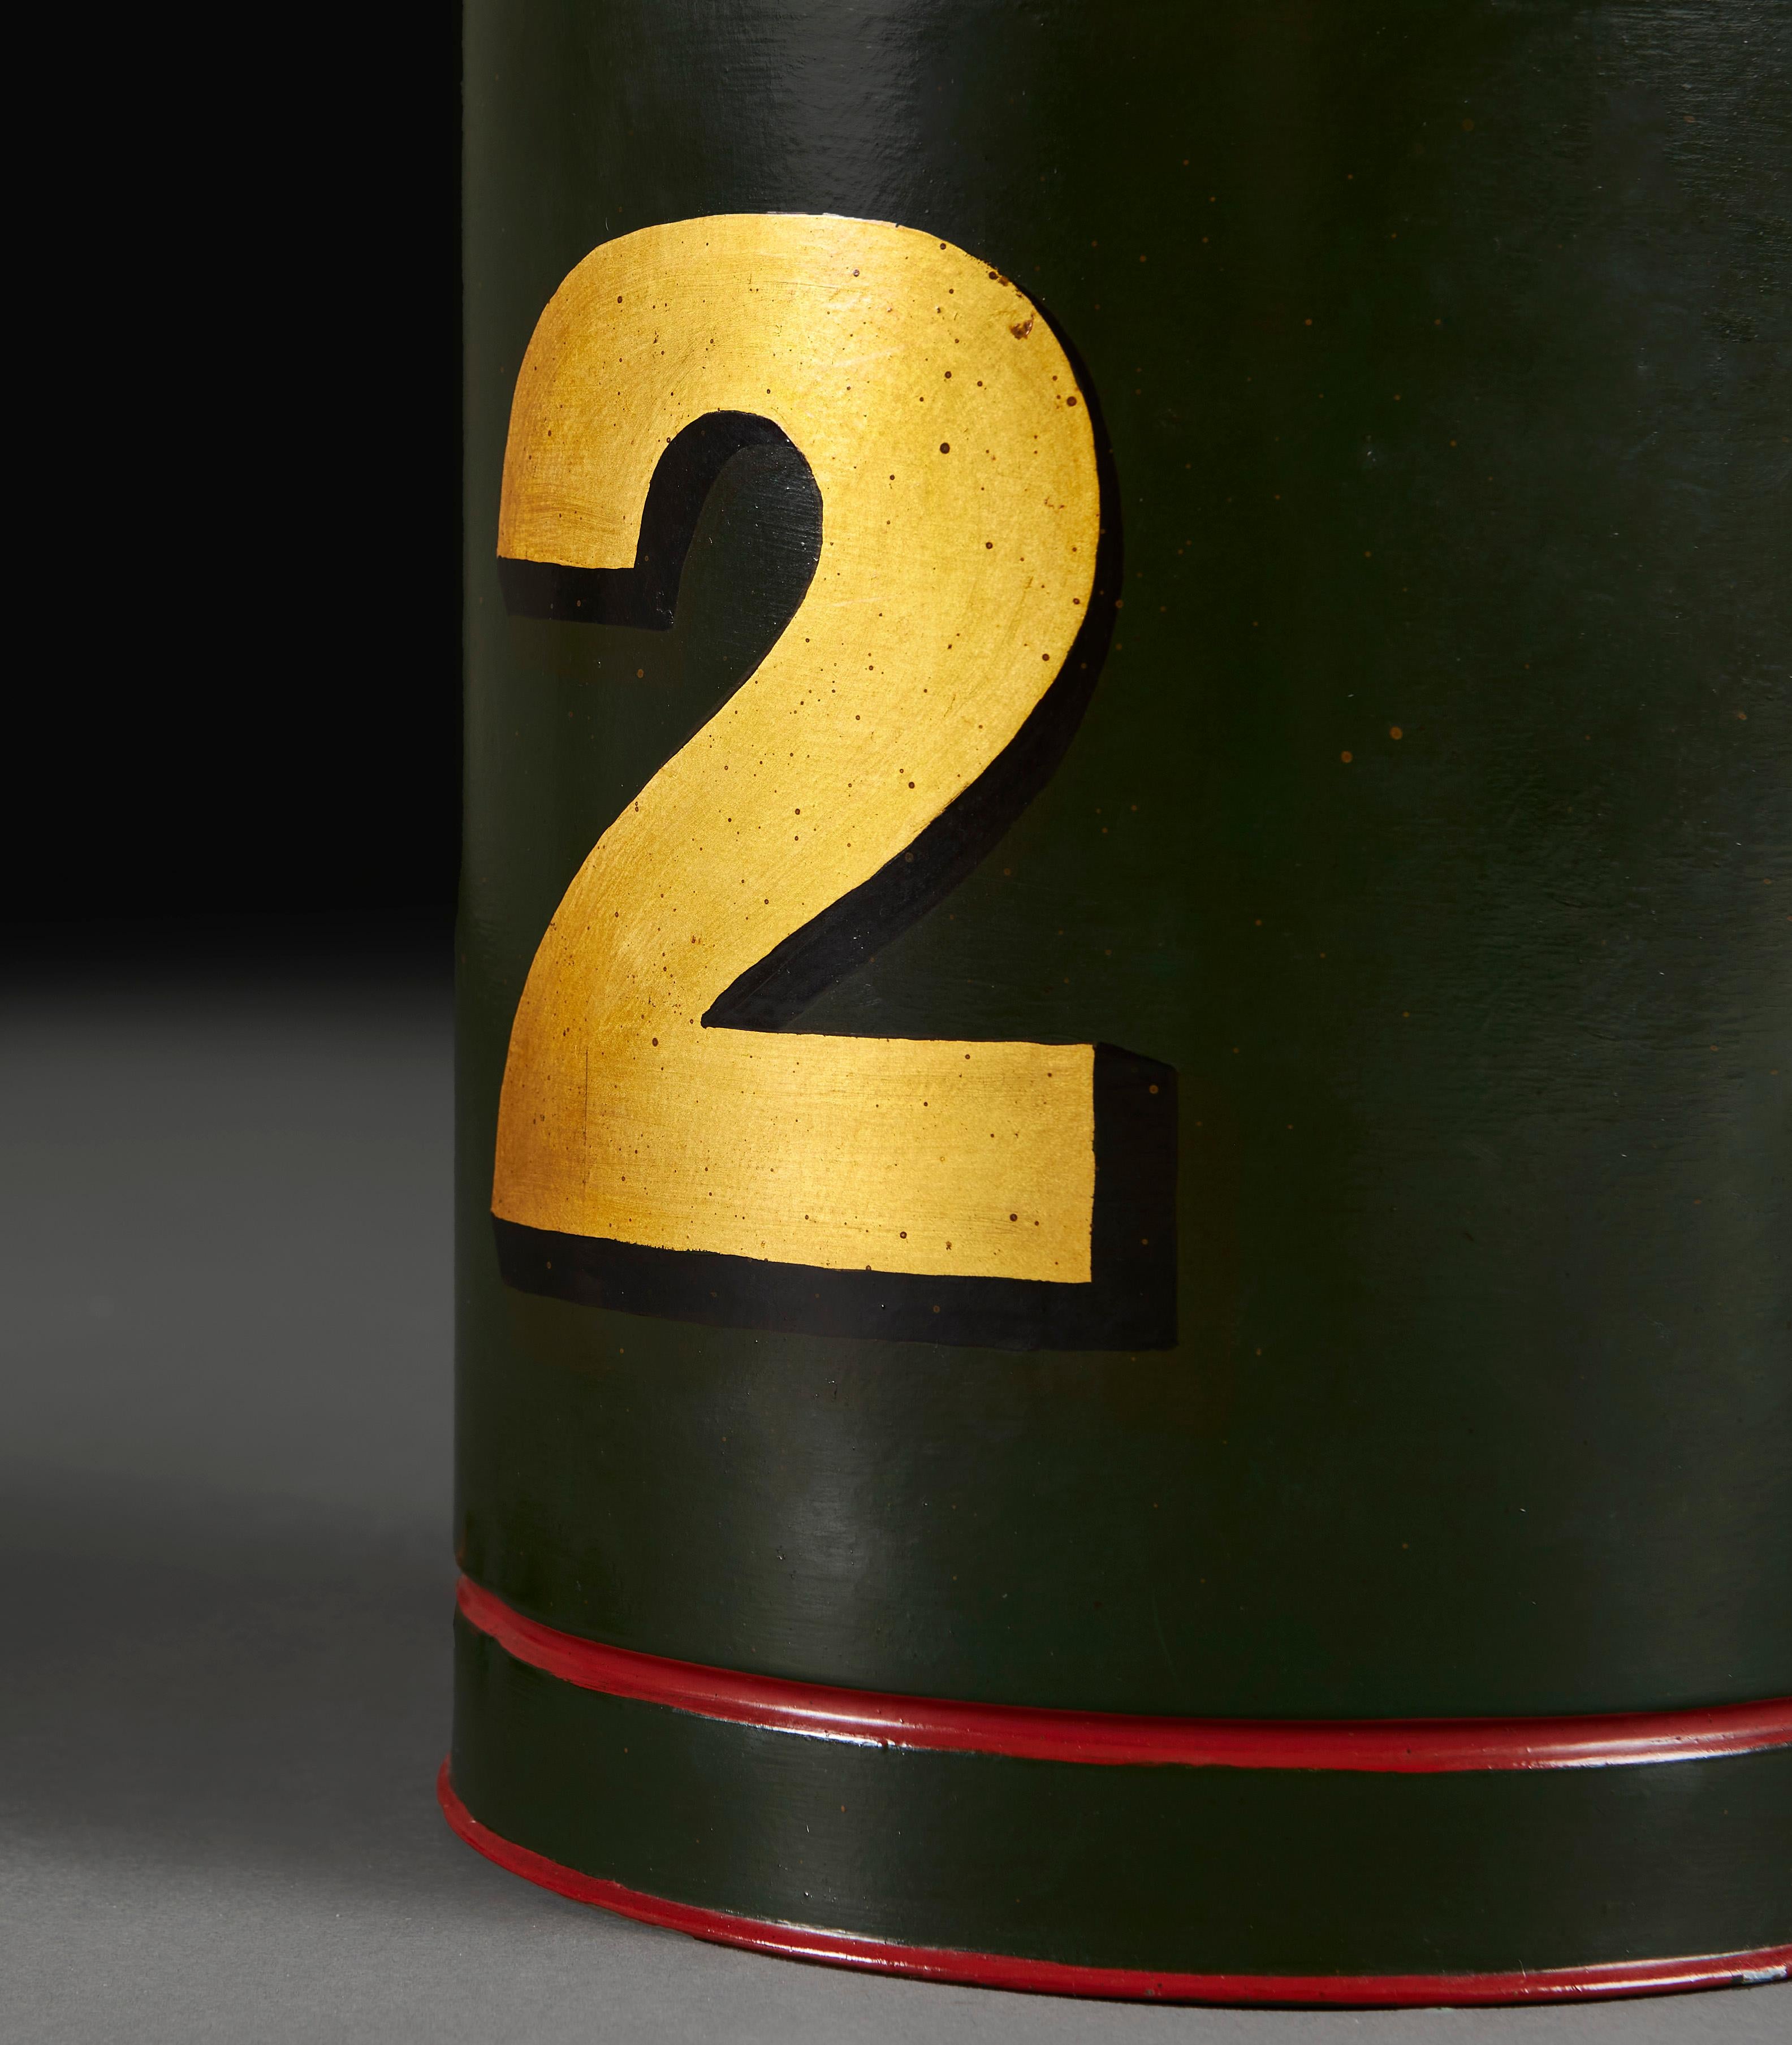 Angleterre, vers 1930

Une boîte à thé édouardienne en guise de lampe, le fond vert avec des anneaux concentriques rouges à la base et au sommet, décorée d'un numéro 2 doré sur le devant. 

Veuillez noter : 
Ne comprend pas l'abat-jour. La lampe a